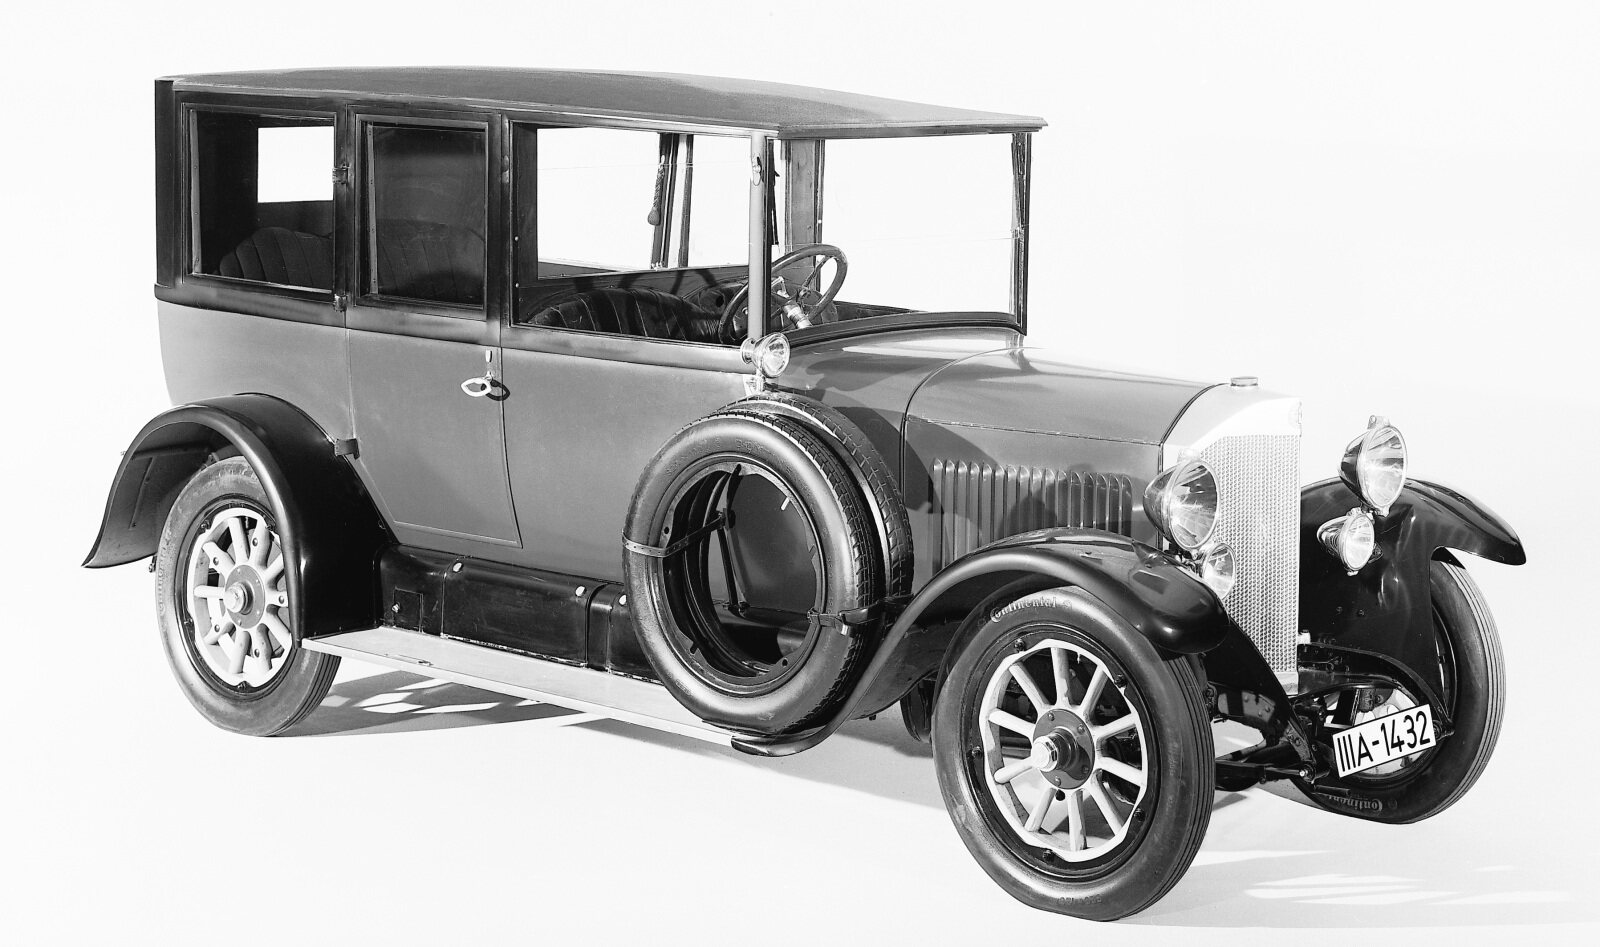 PKW1091 10/30 hp - 16/50 hp Benz, 1921 - 1927